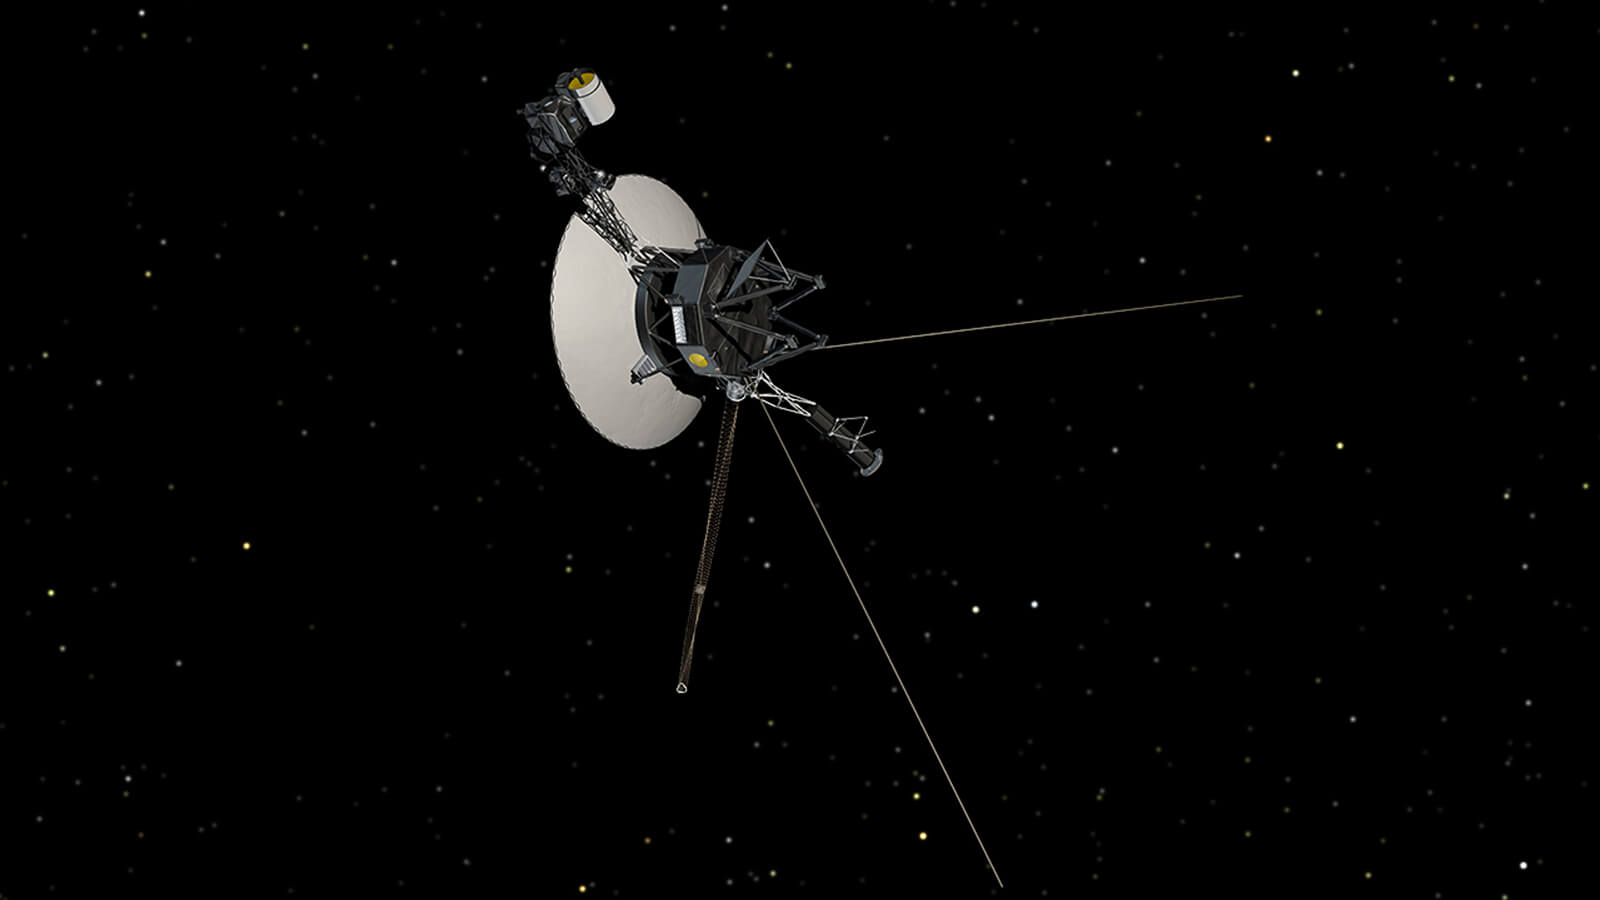 La NASA a réussi à établir le contact avec la sonde Voyager 2 après une mystérieuse panne